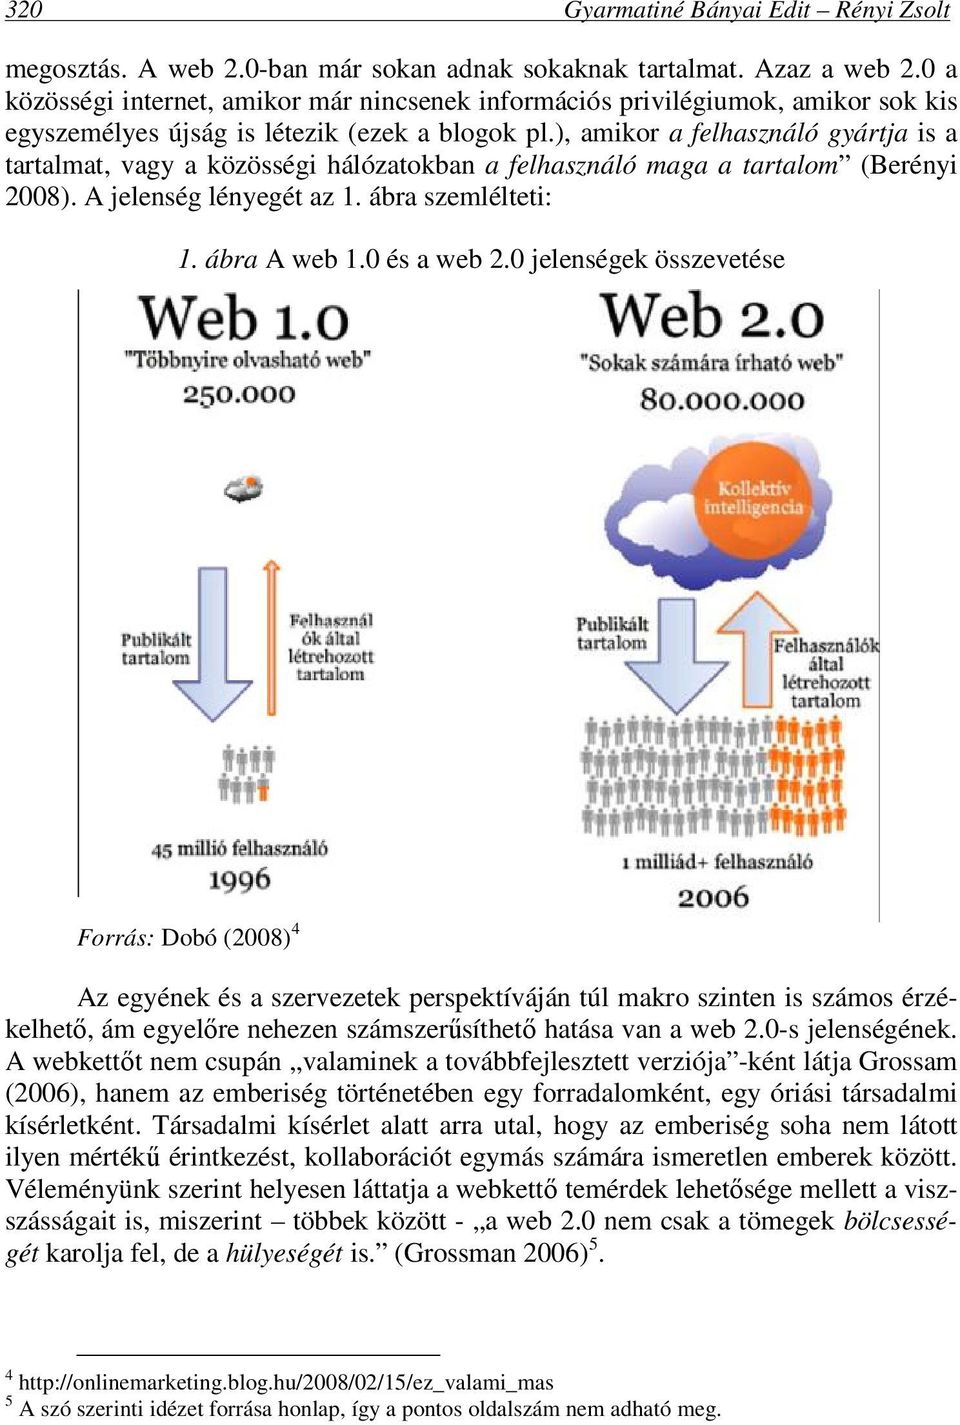 ), amikor a felhasználó gyártja is a tartalmat, vagy a közösségi hálózatokban a felhasználó maga a tartalom (Berényi 2008). A jelenség lényegét az 1. ábra szemlélteti: 1. ábra A web 1.0 és a web 2.